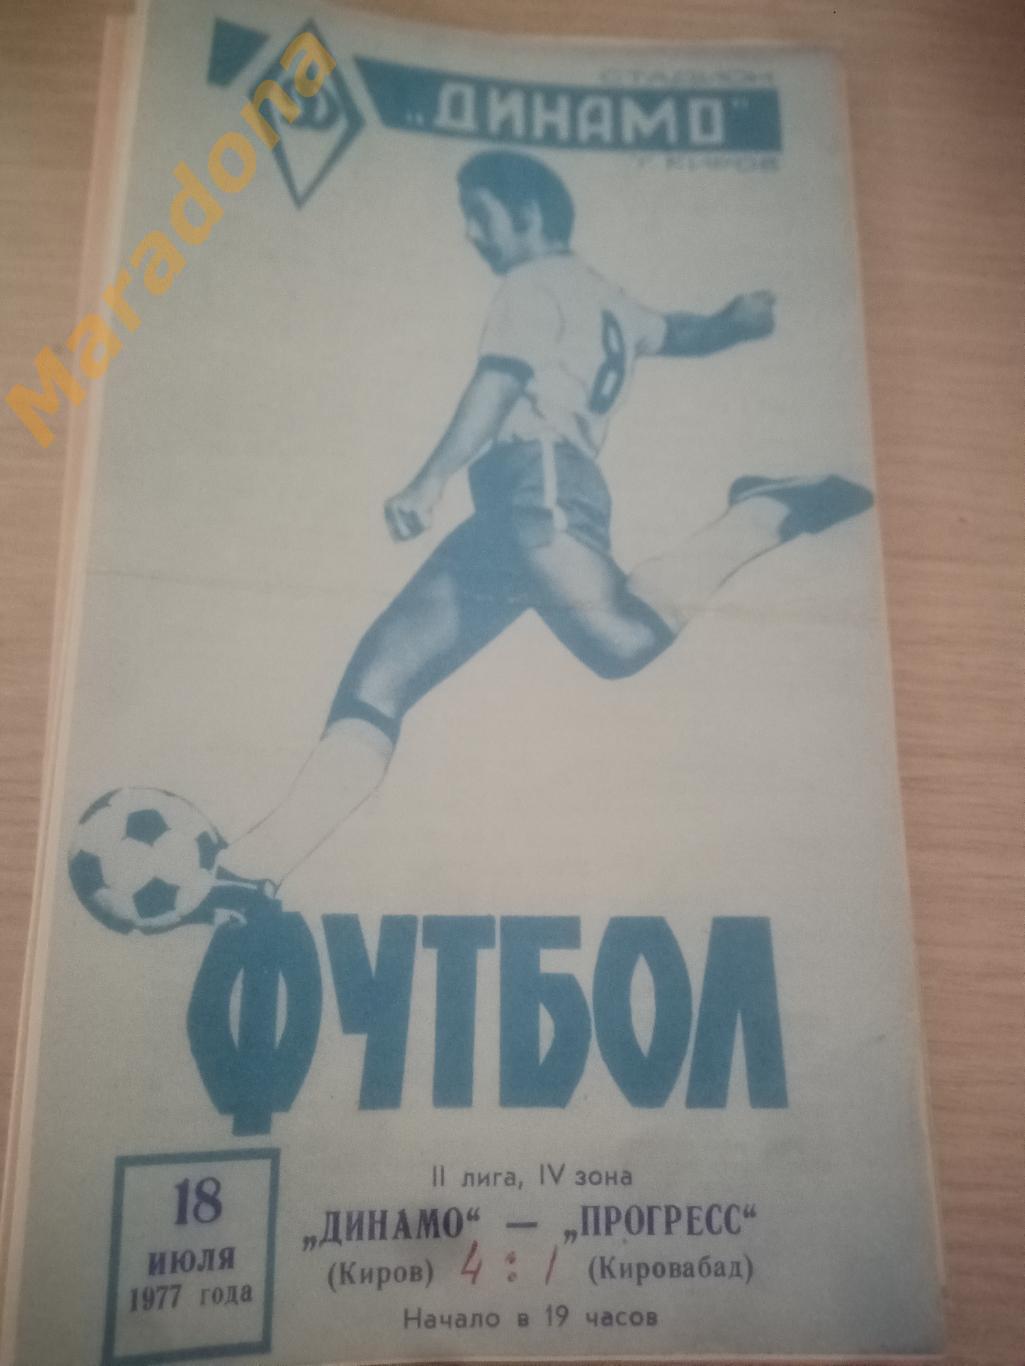 Динамо Киров - Прогресс Кировабад 1977 !синяя!